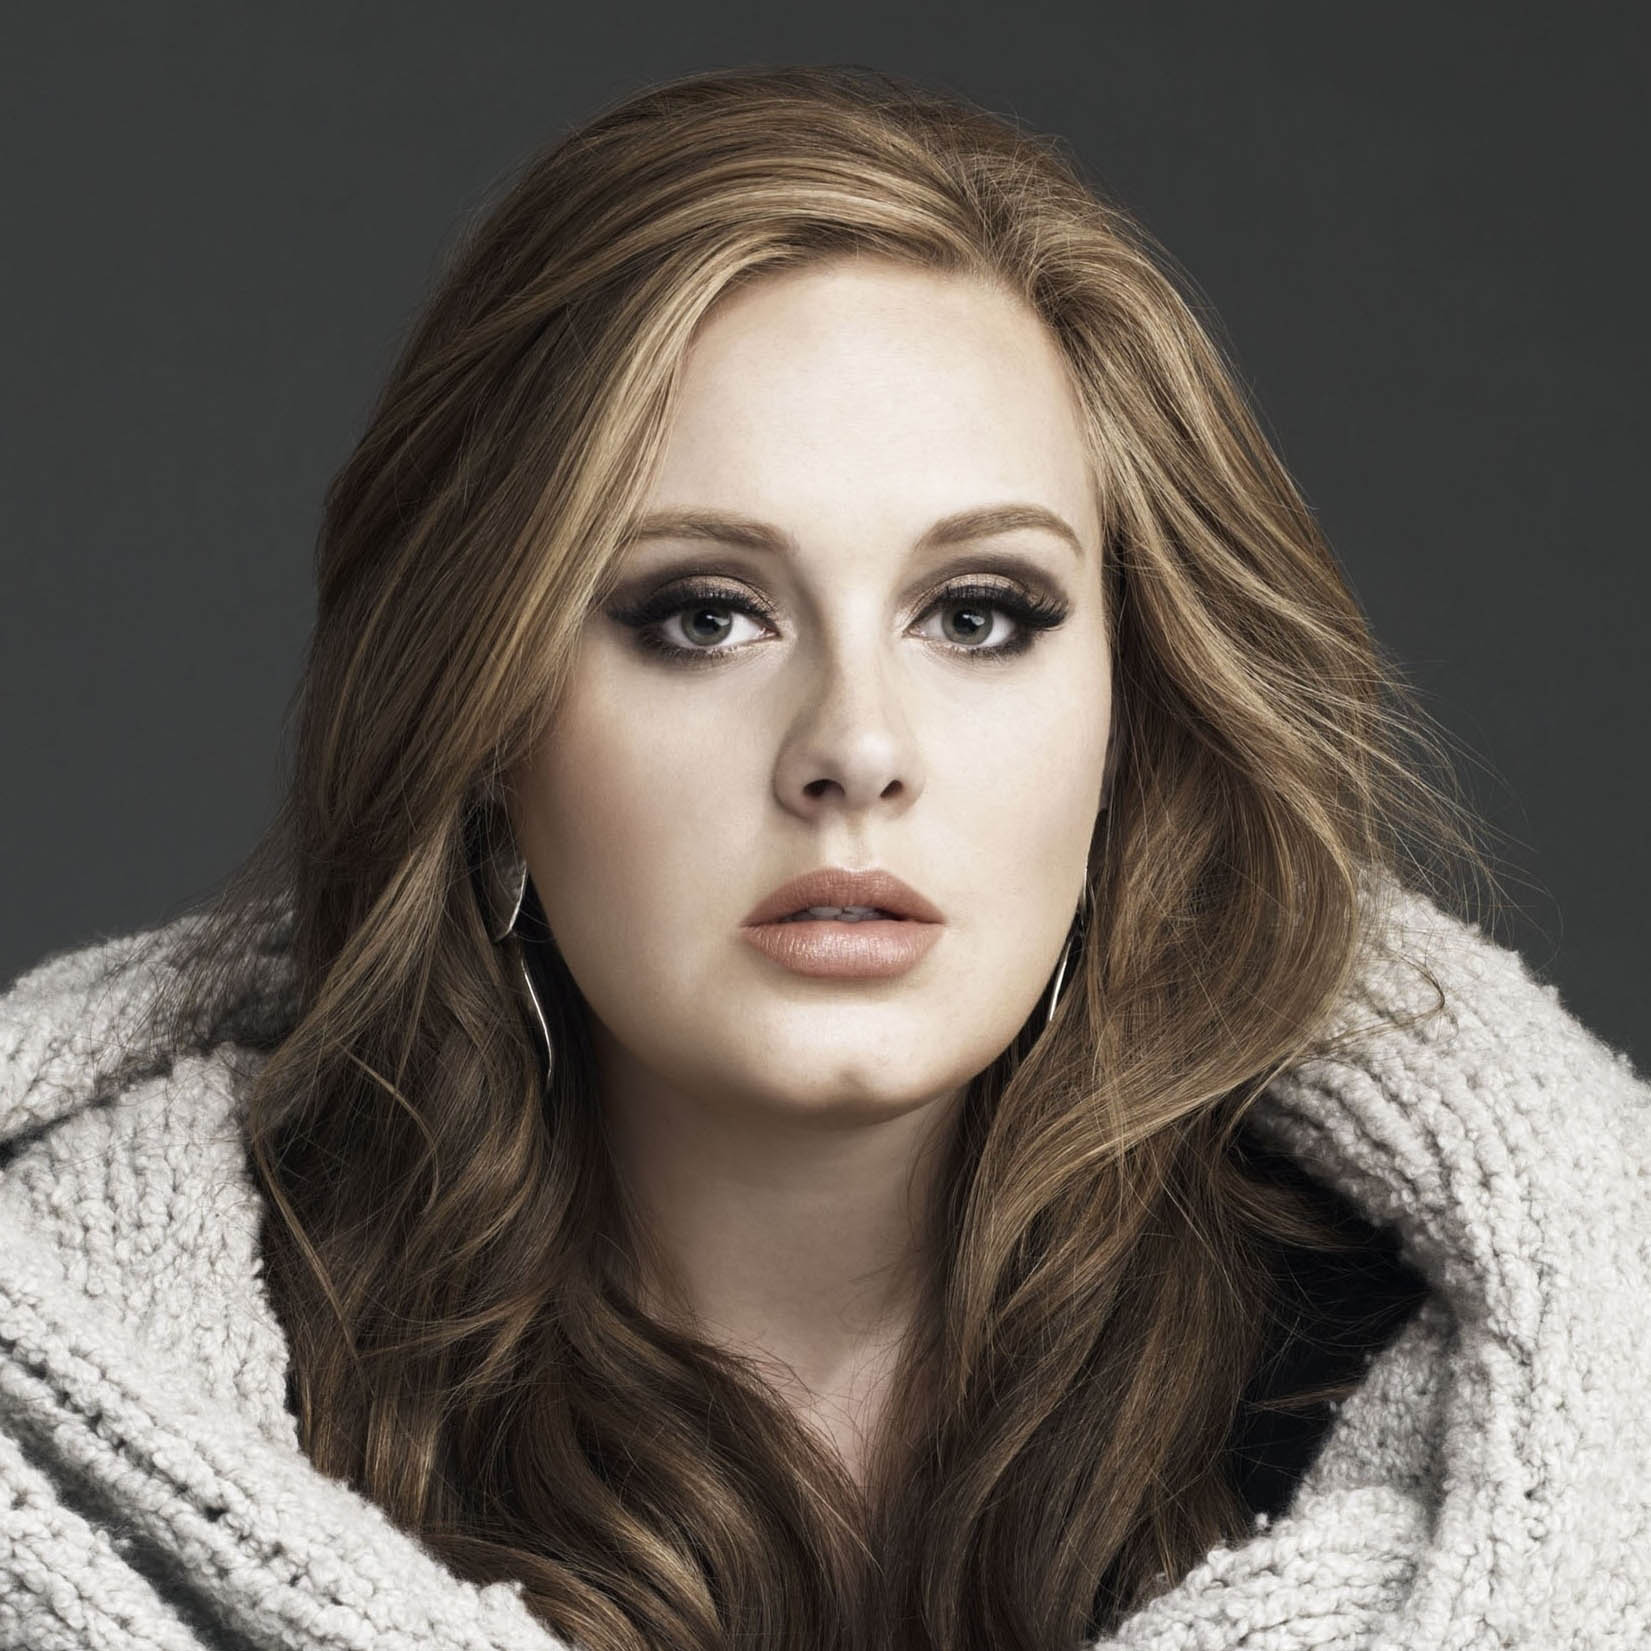 Adele - Sweetest Devotion (Terjemahan)